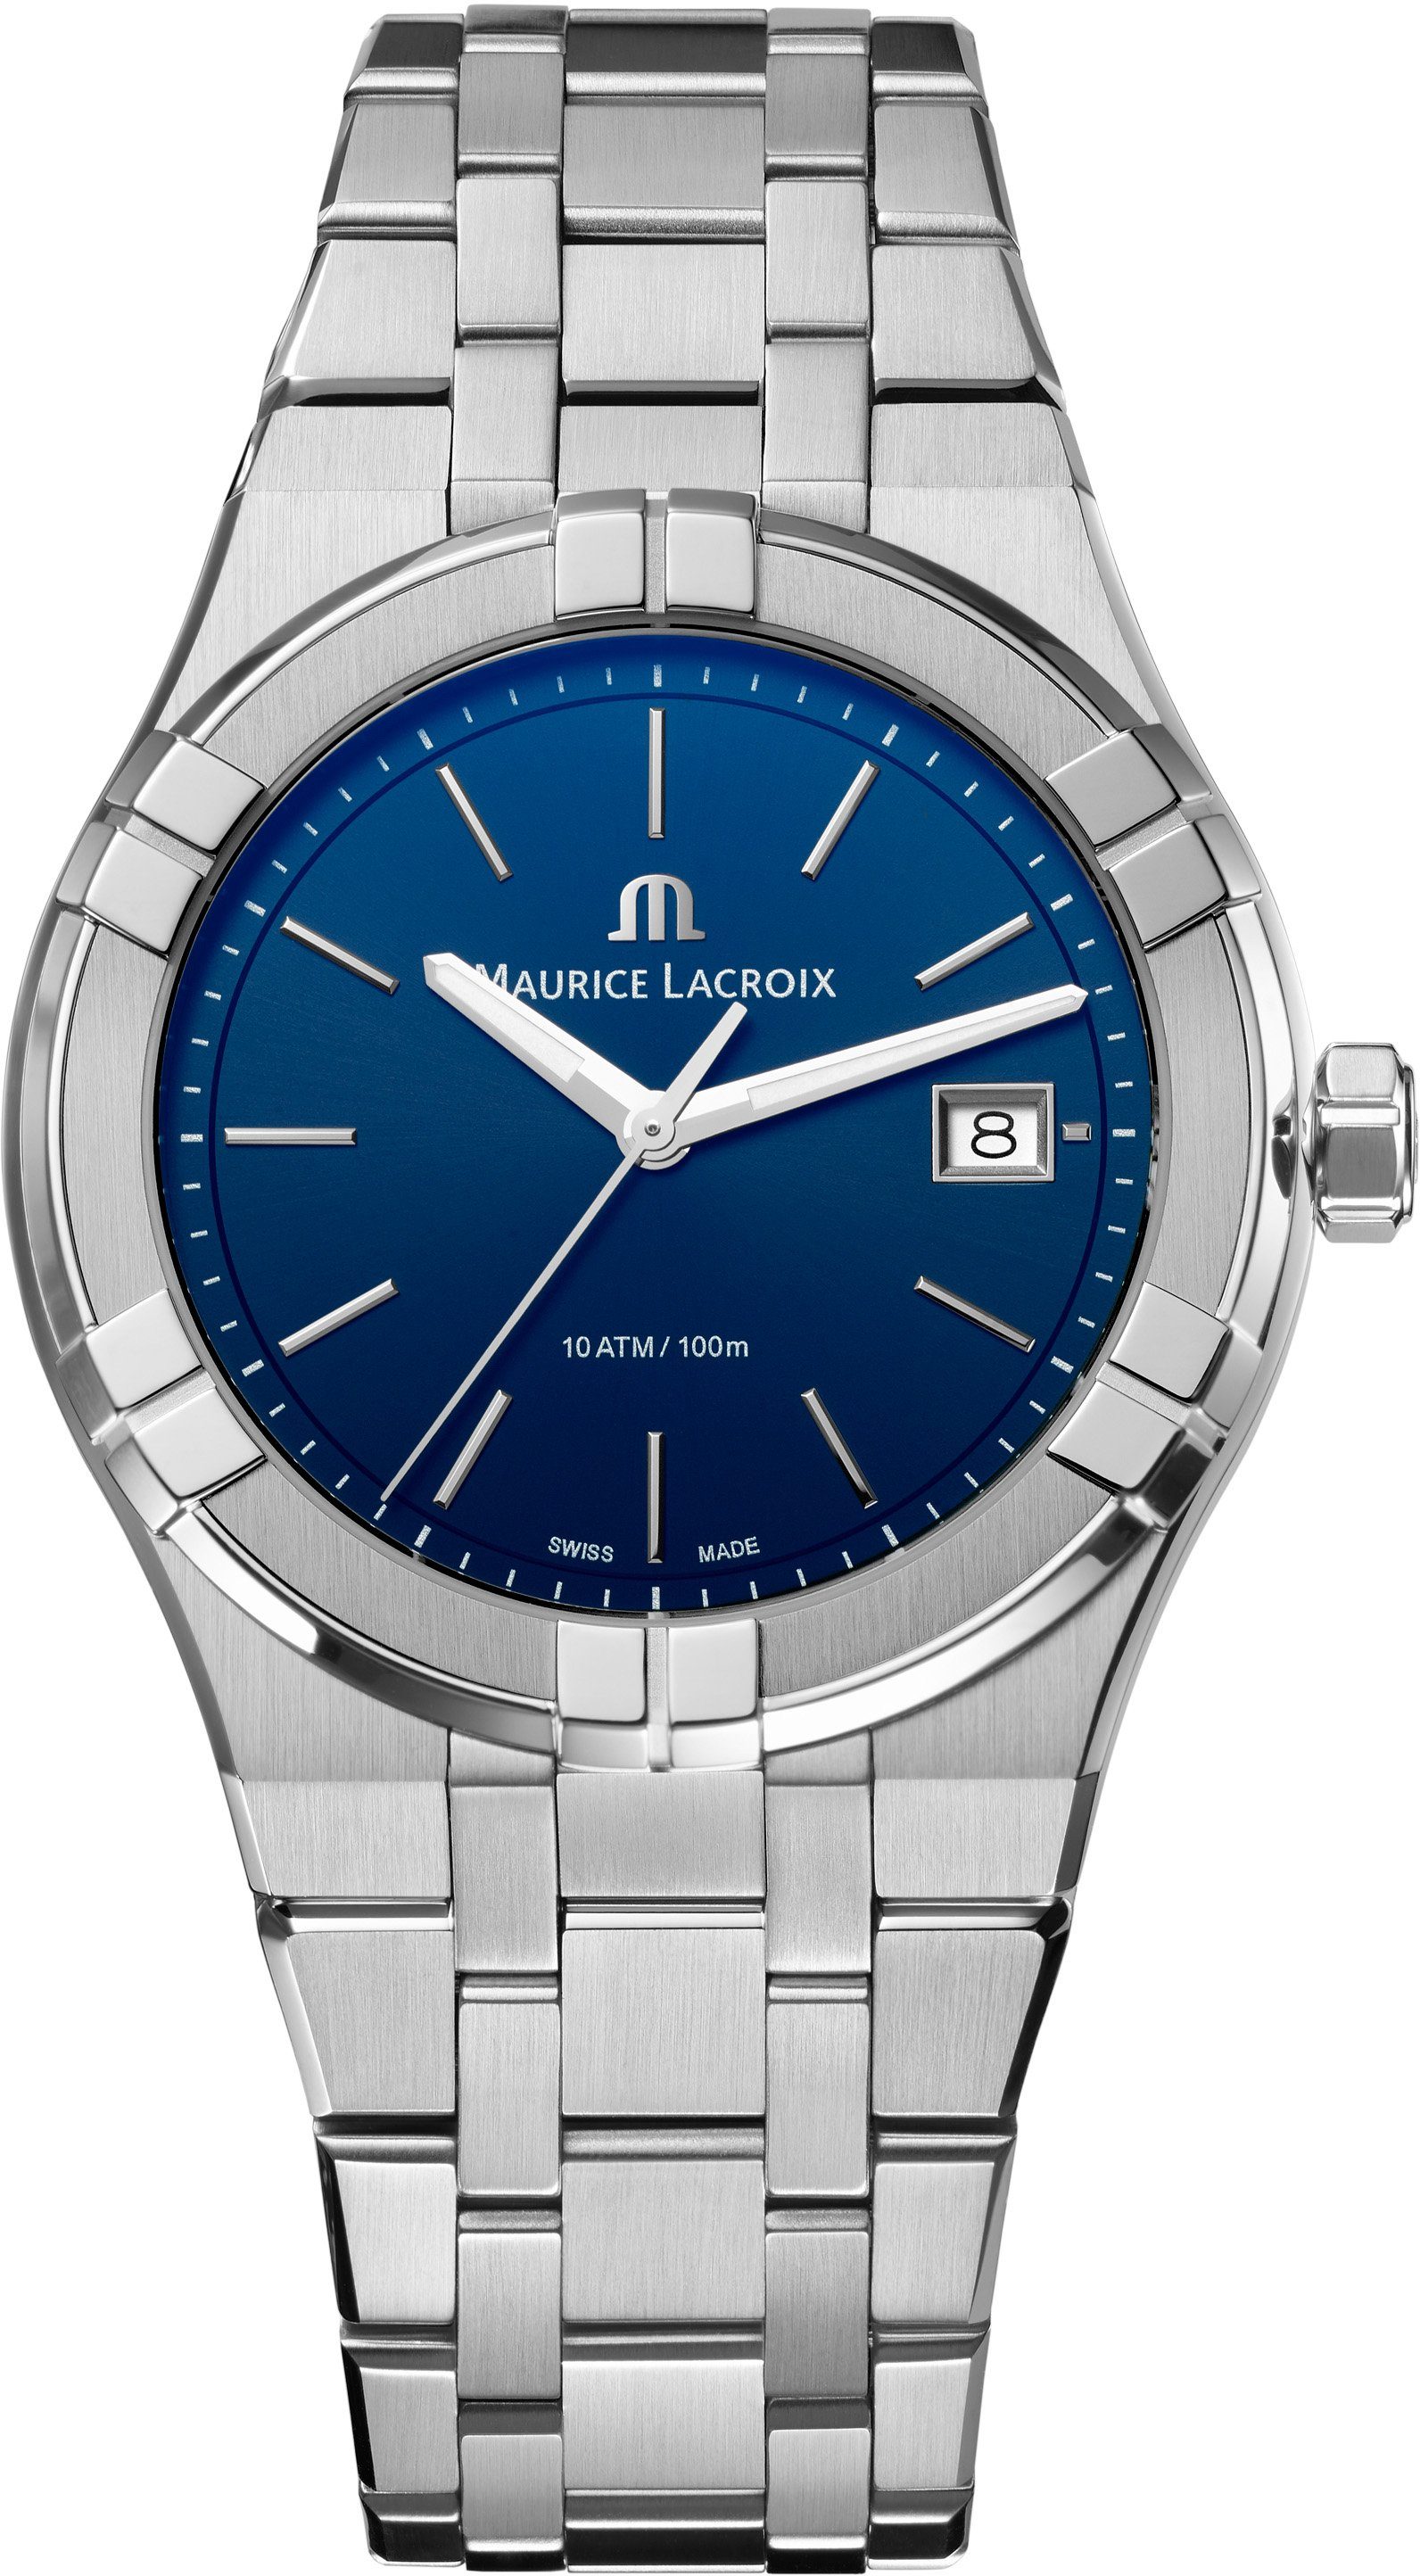 Herren Uhren MAURICE LACROIX Schweizer Uhr Aikon Quarz, AI1108-SS002-430-1